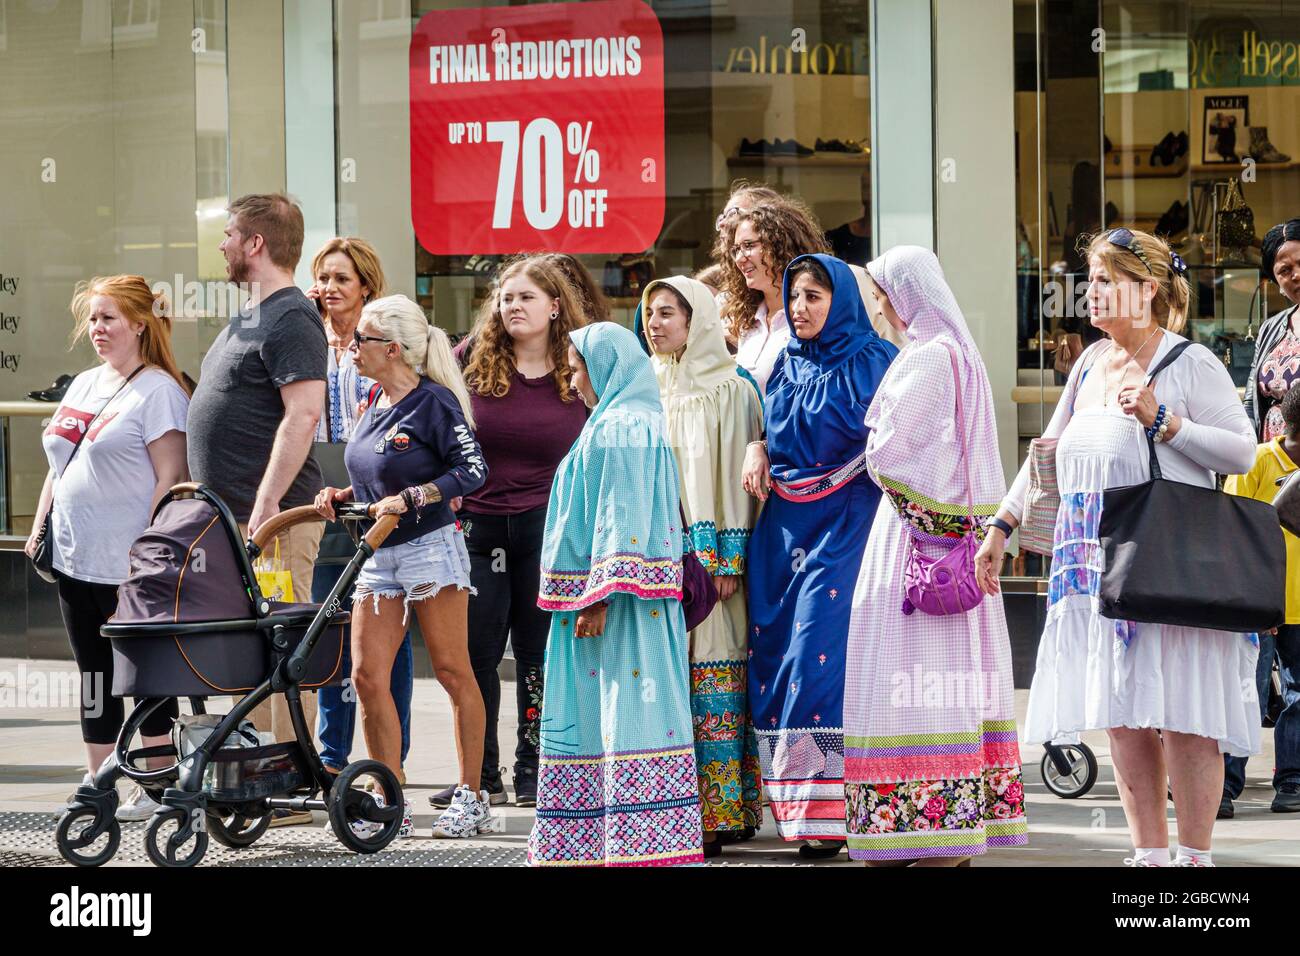 Inghilterra Londra Mayfair New Bond Street, strada angolo pedonale attraversamento attesa segnale, donne musulmana testa coperta, Regno Unito, Foto Stock